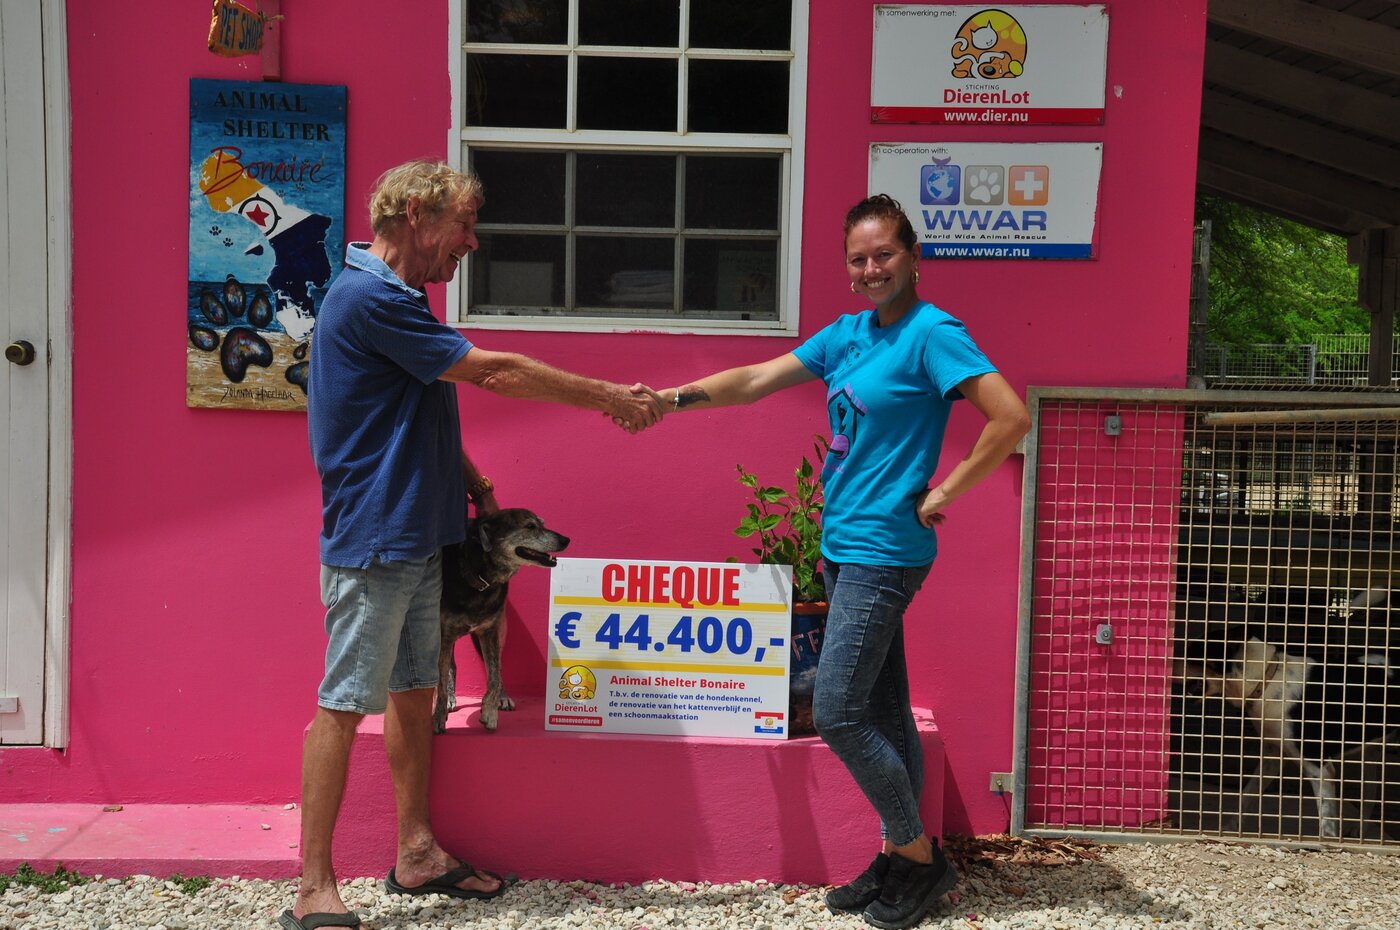 Droomcheque van € 44.400 wordt overhandigd aan Animal Shelter Bonaire